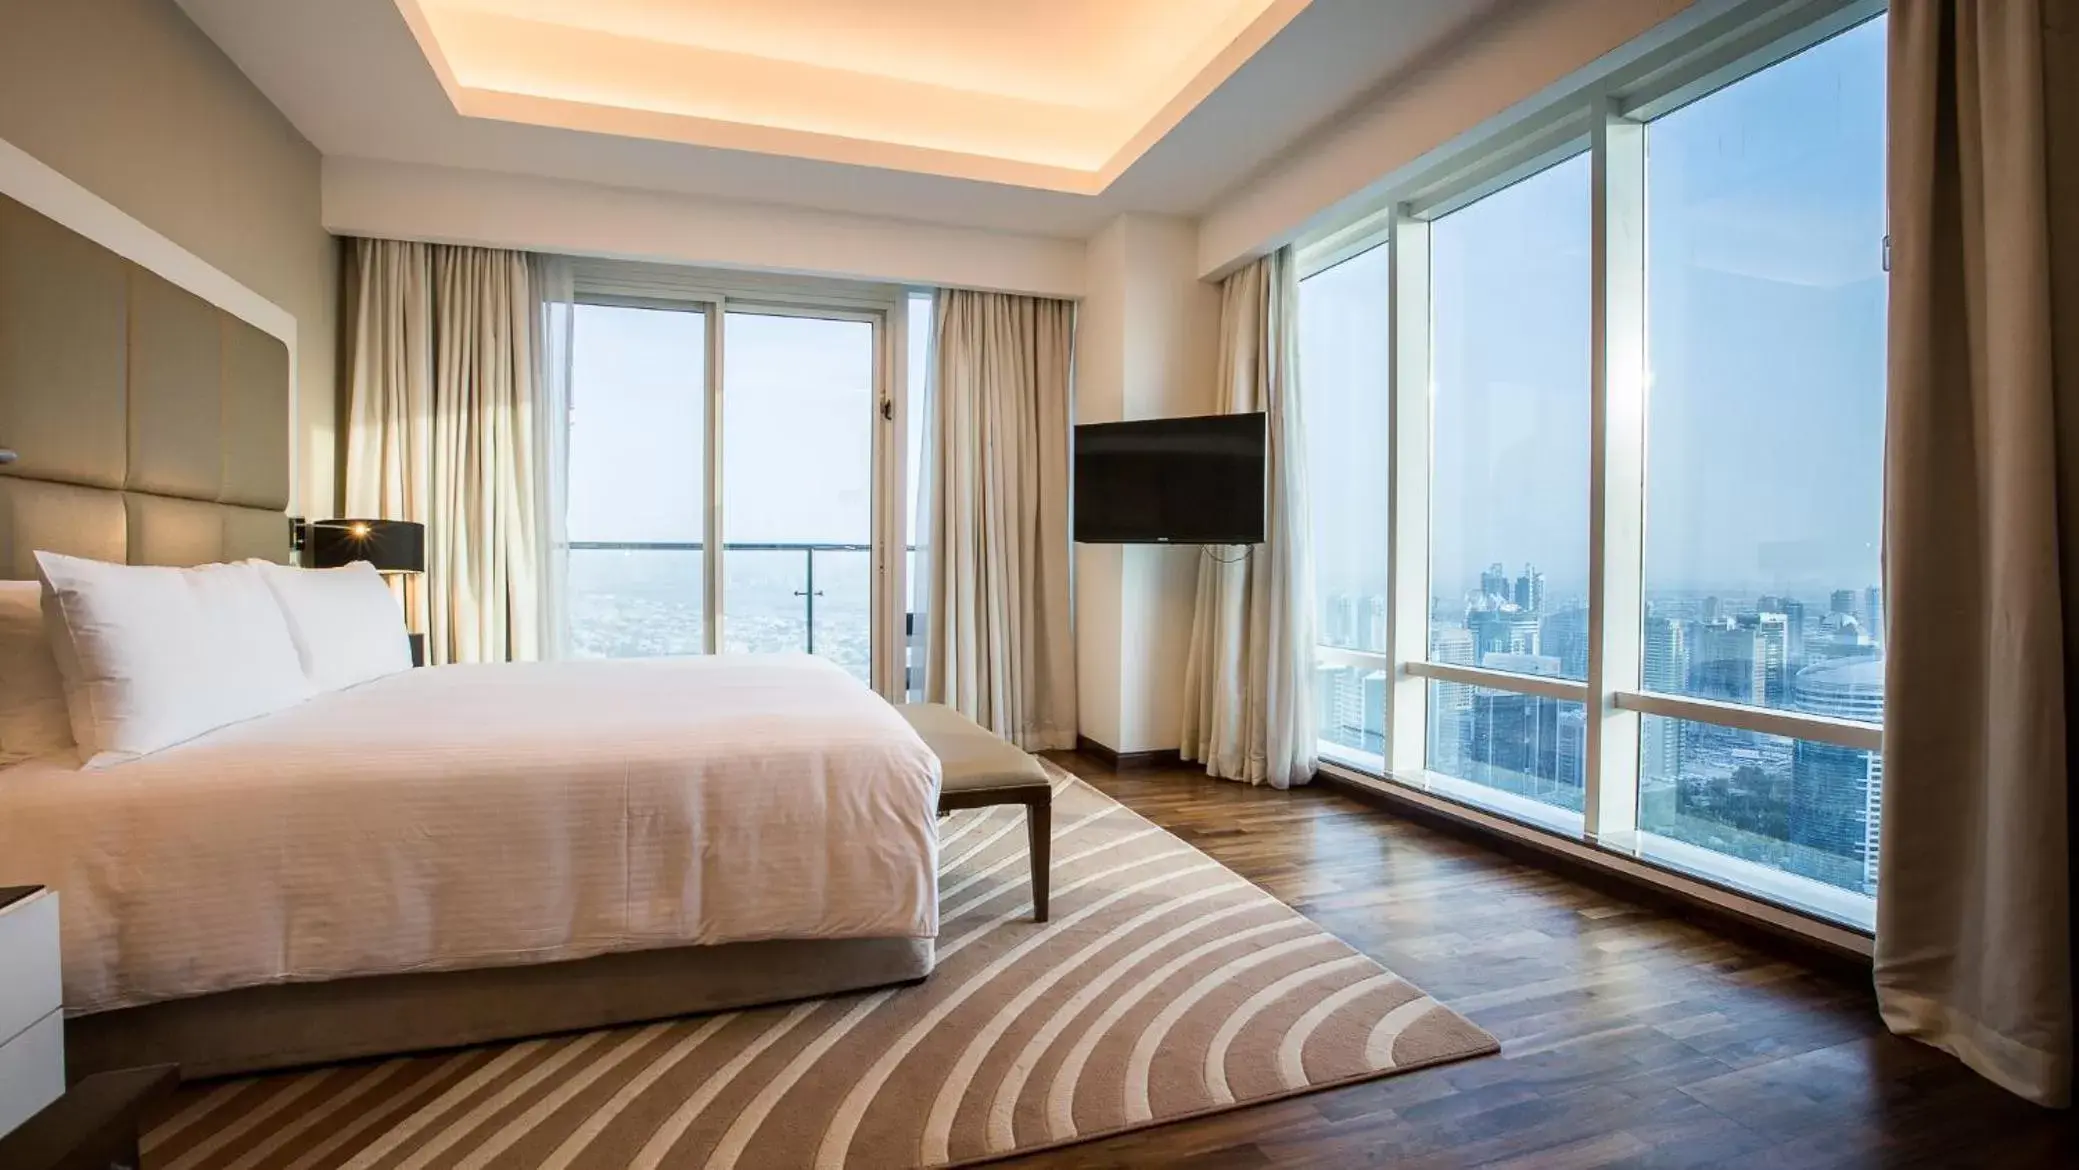 Sea view in La Suite Dubai Hotel & Apartments